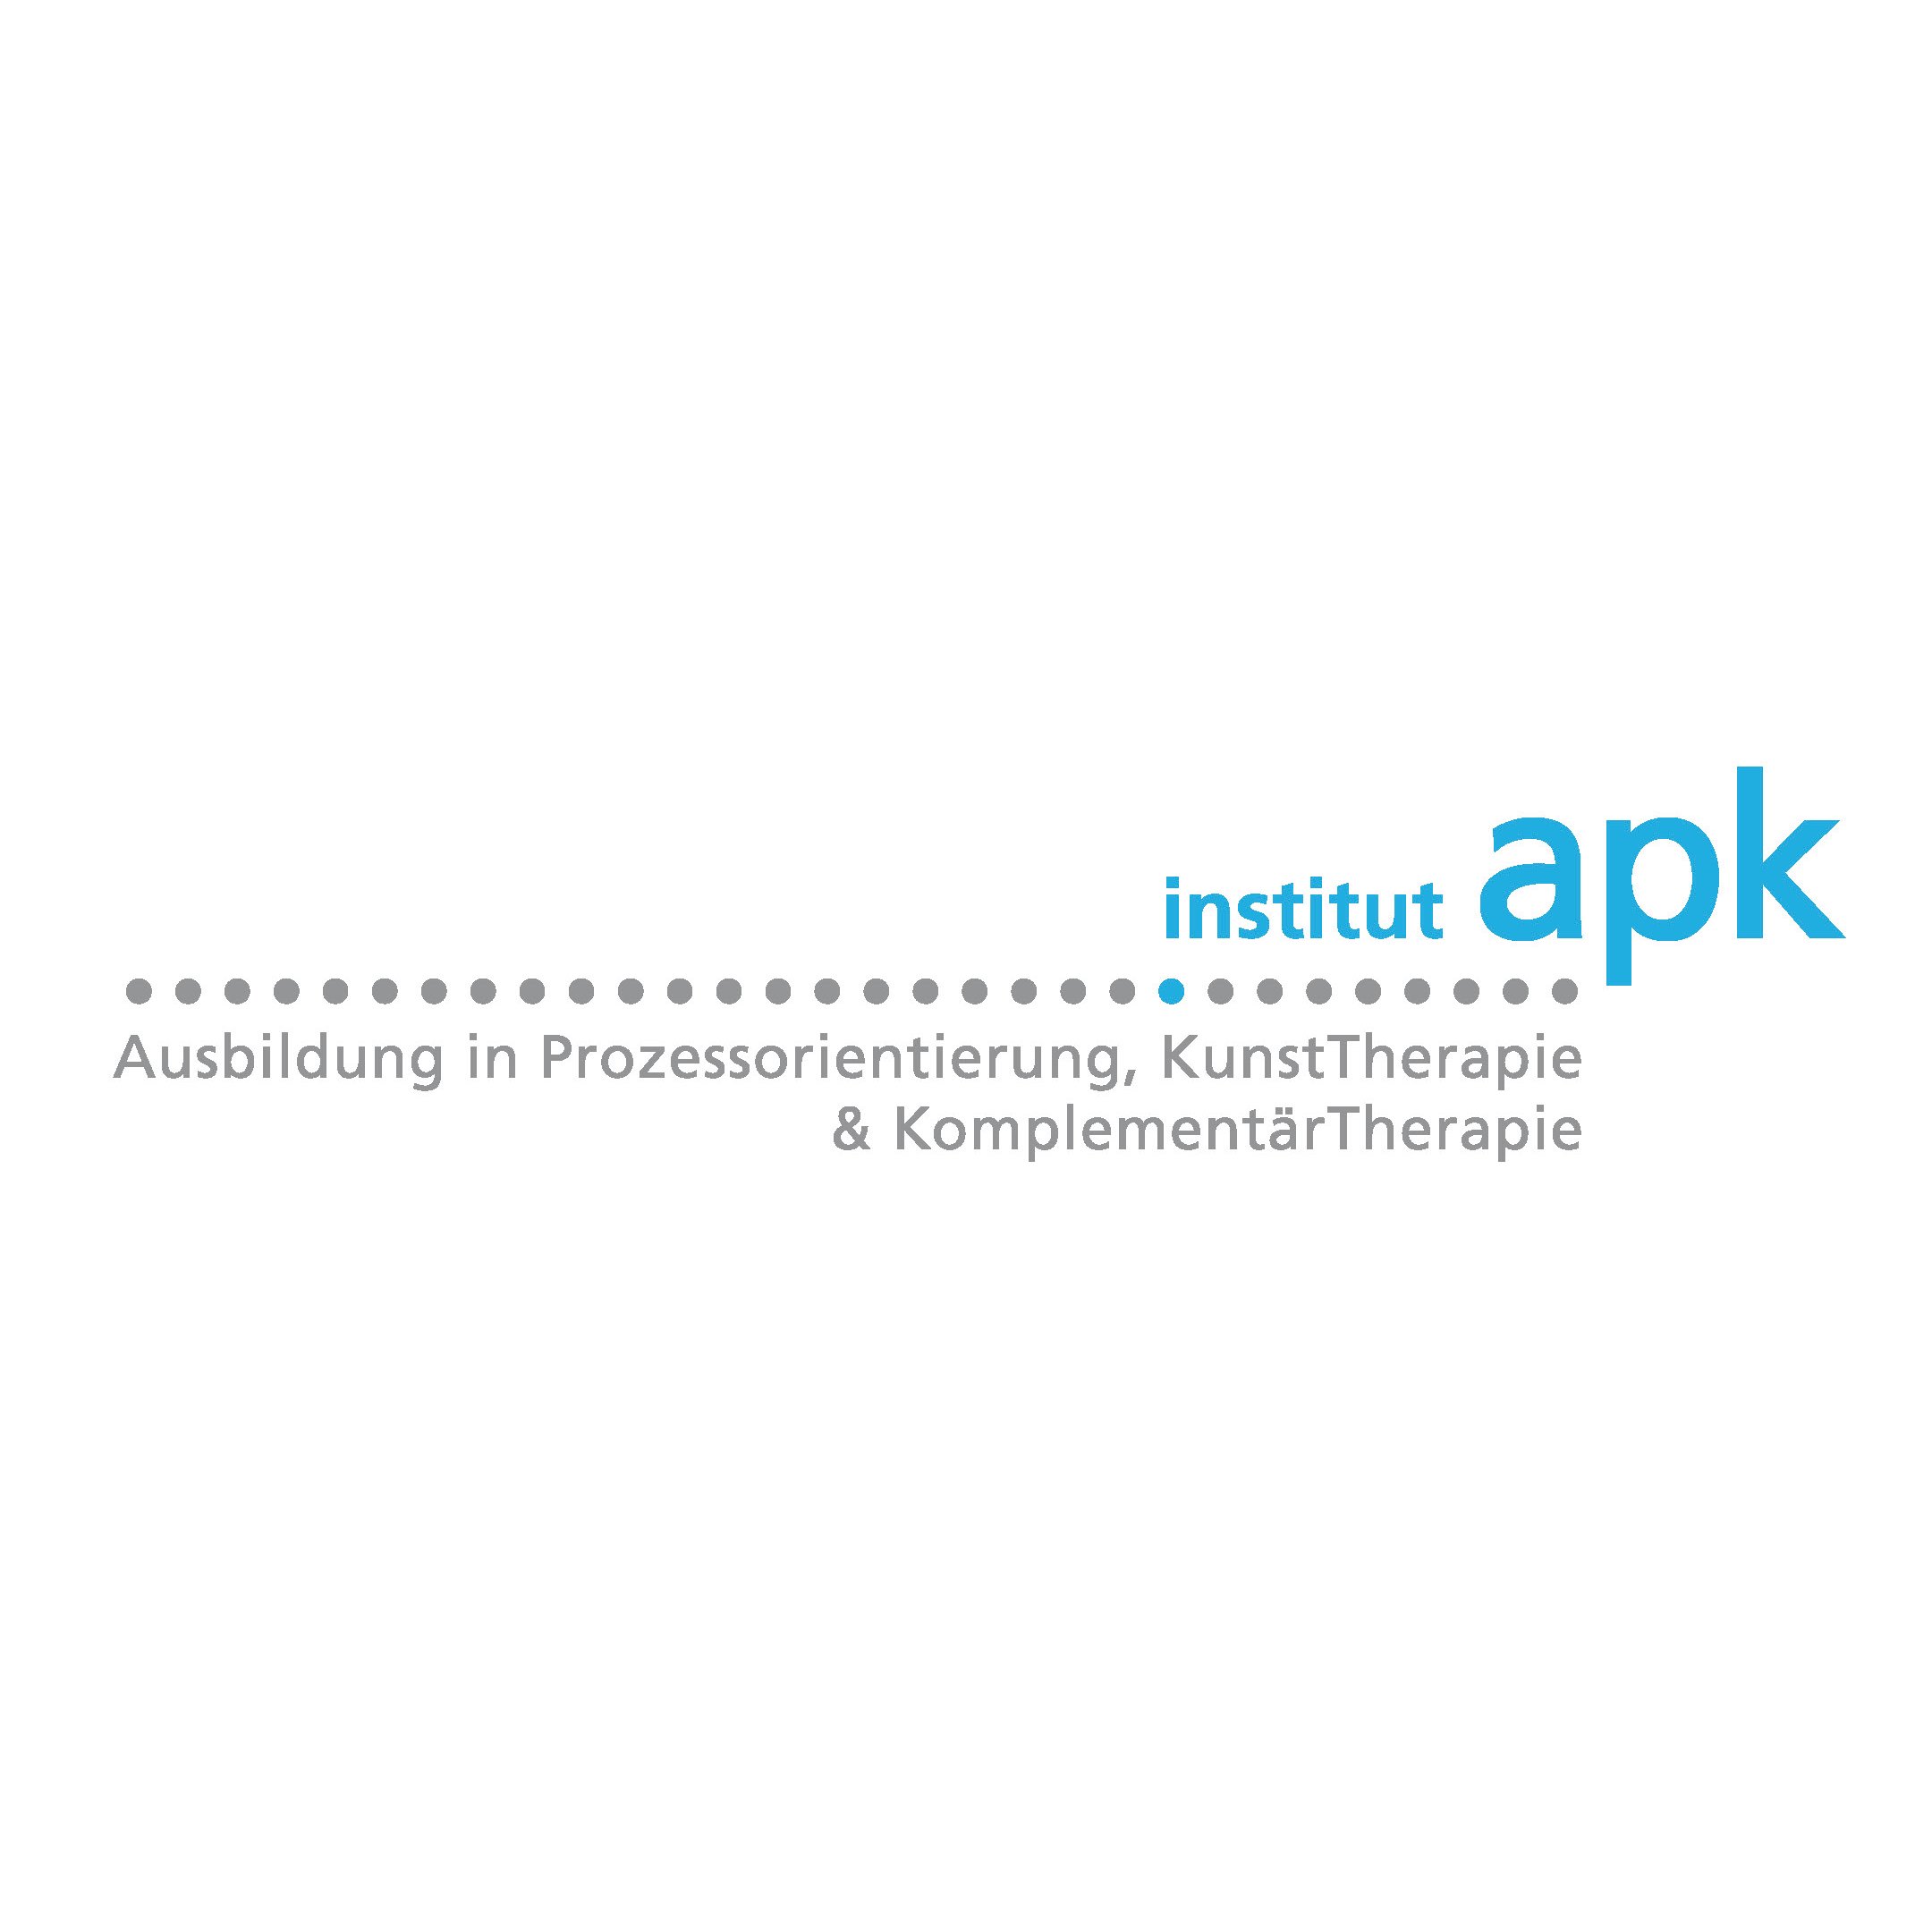 Institut apk Logo